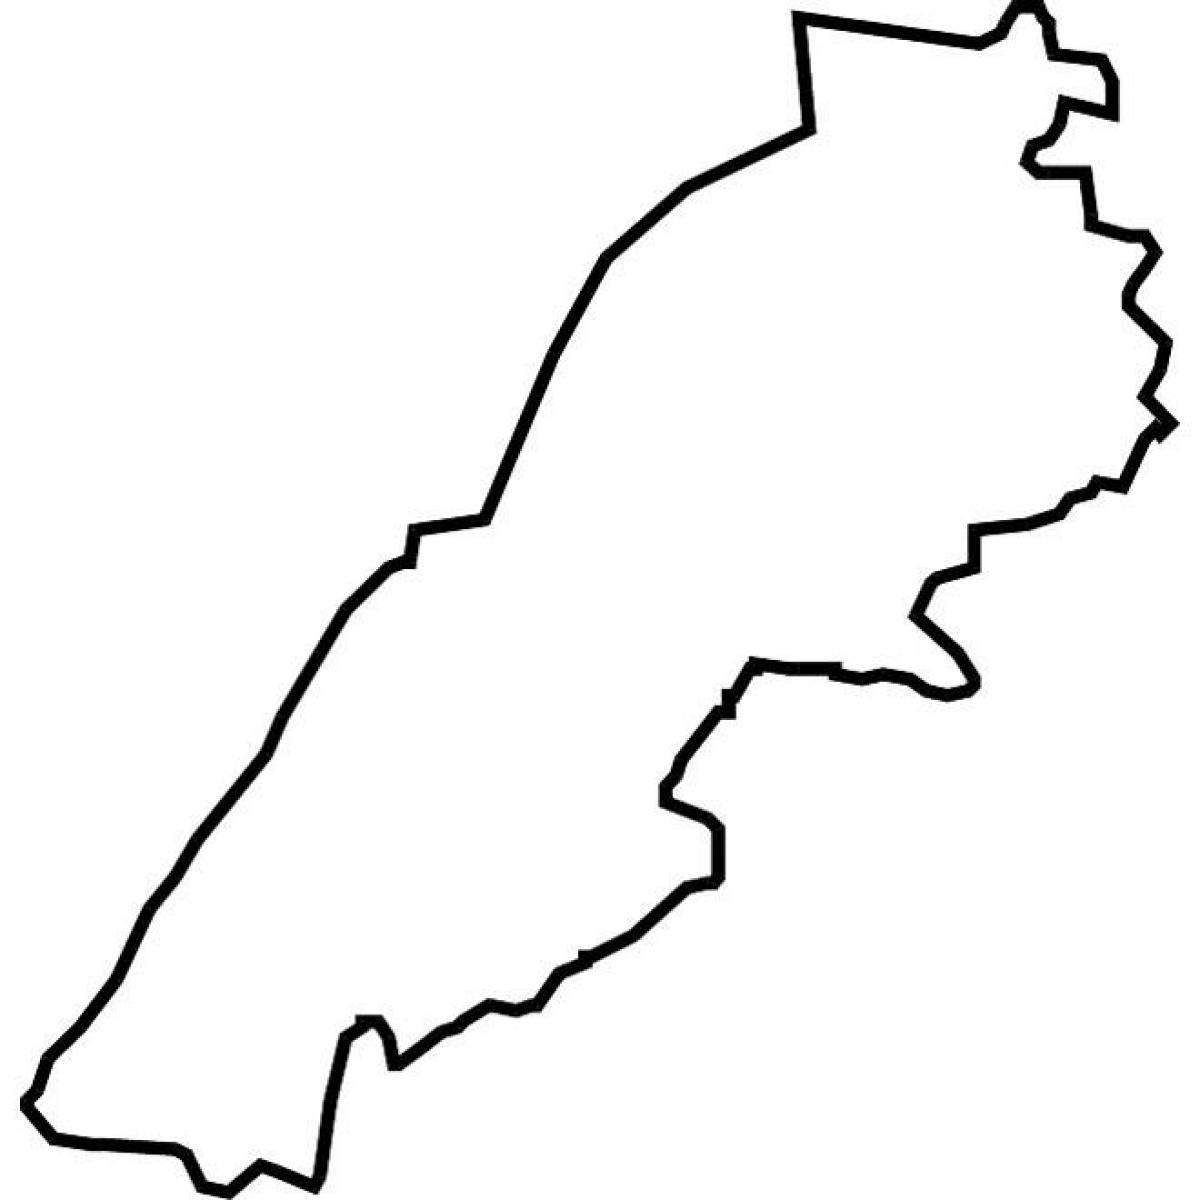 რუკა ლიბანის ვექტორული რუკა